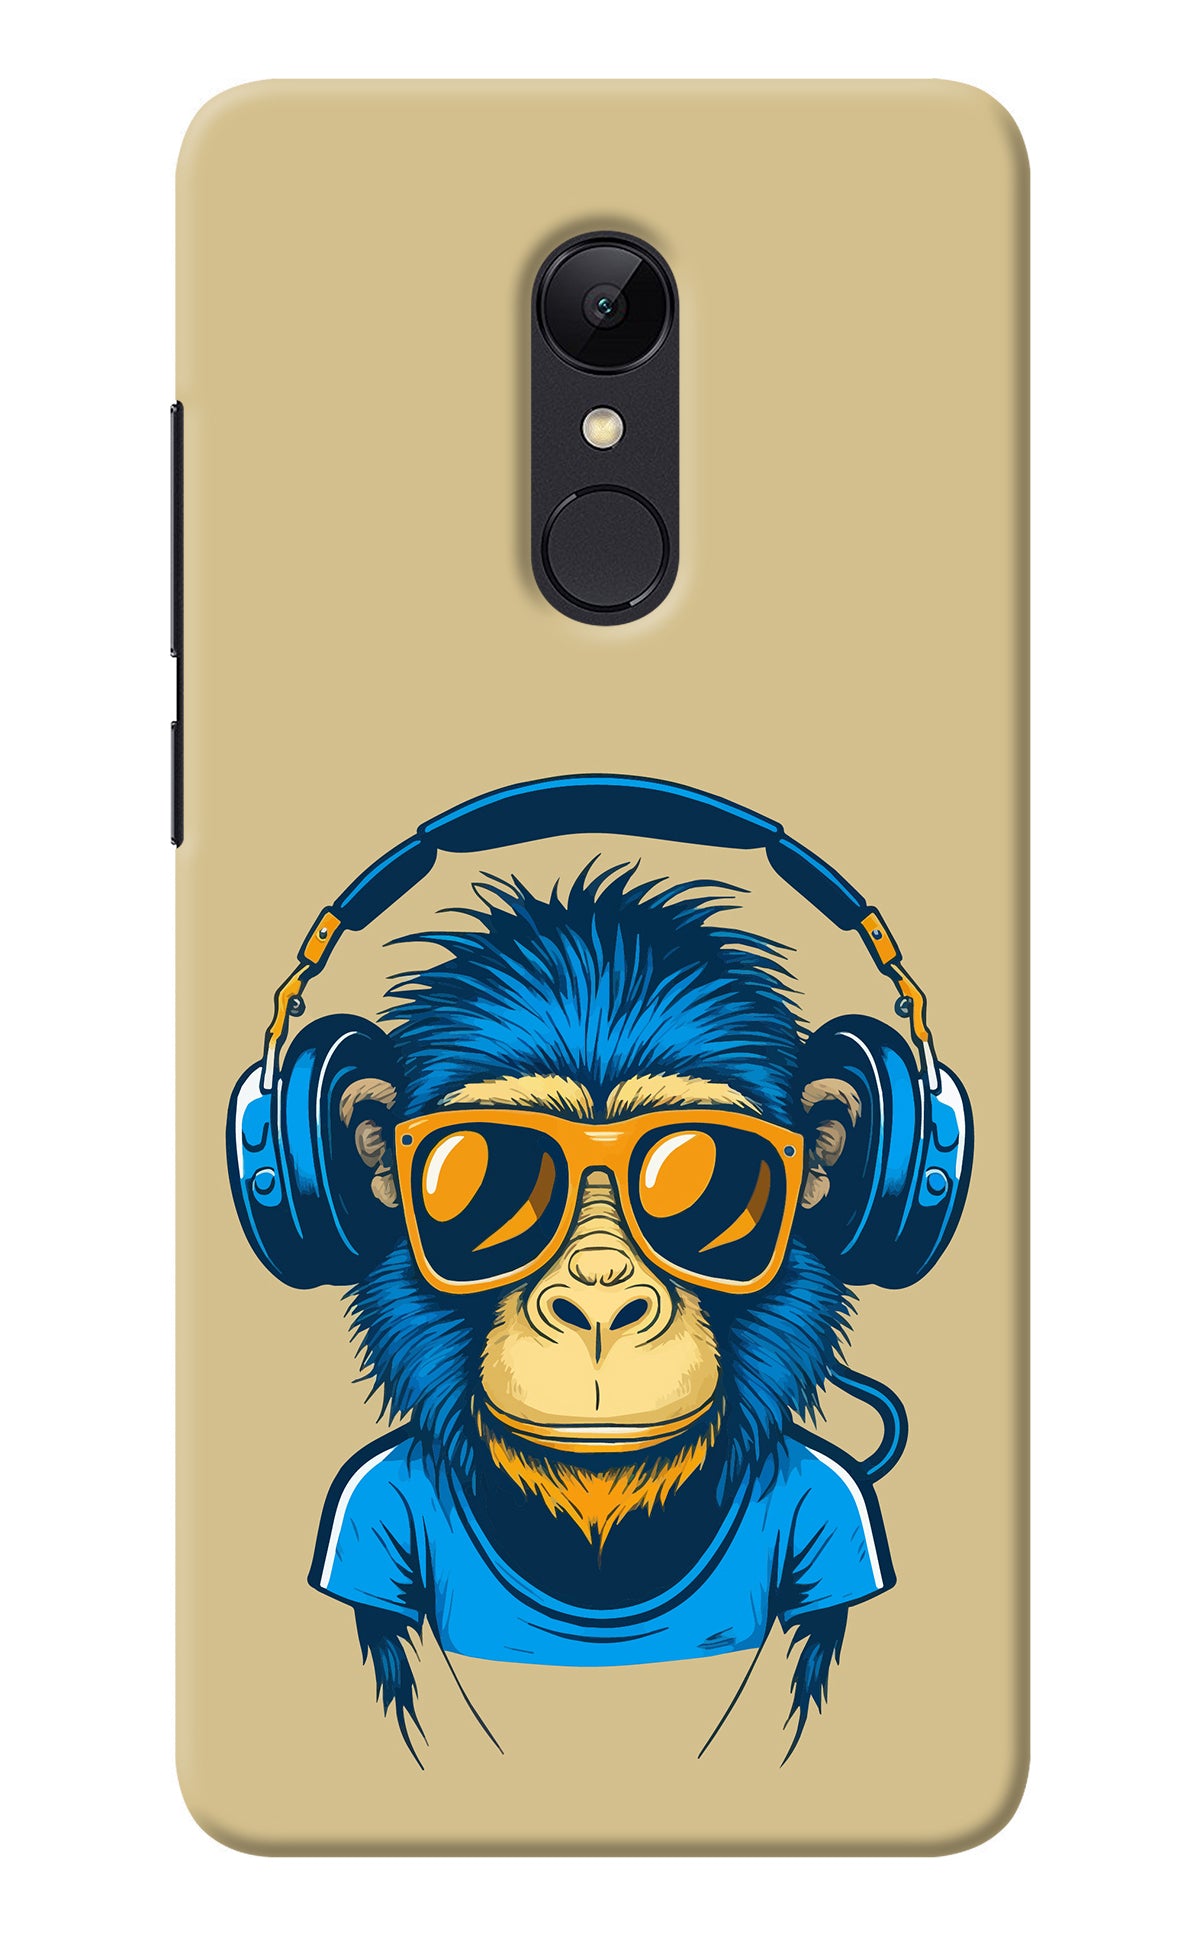 Monkey Headphone Redmi 5 Back Cover